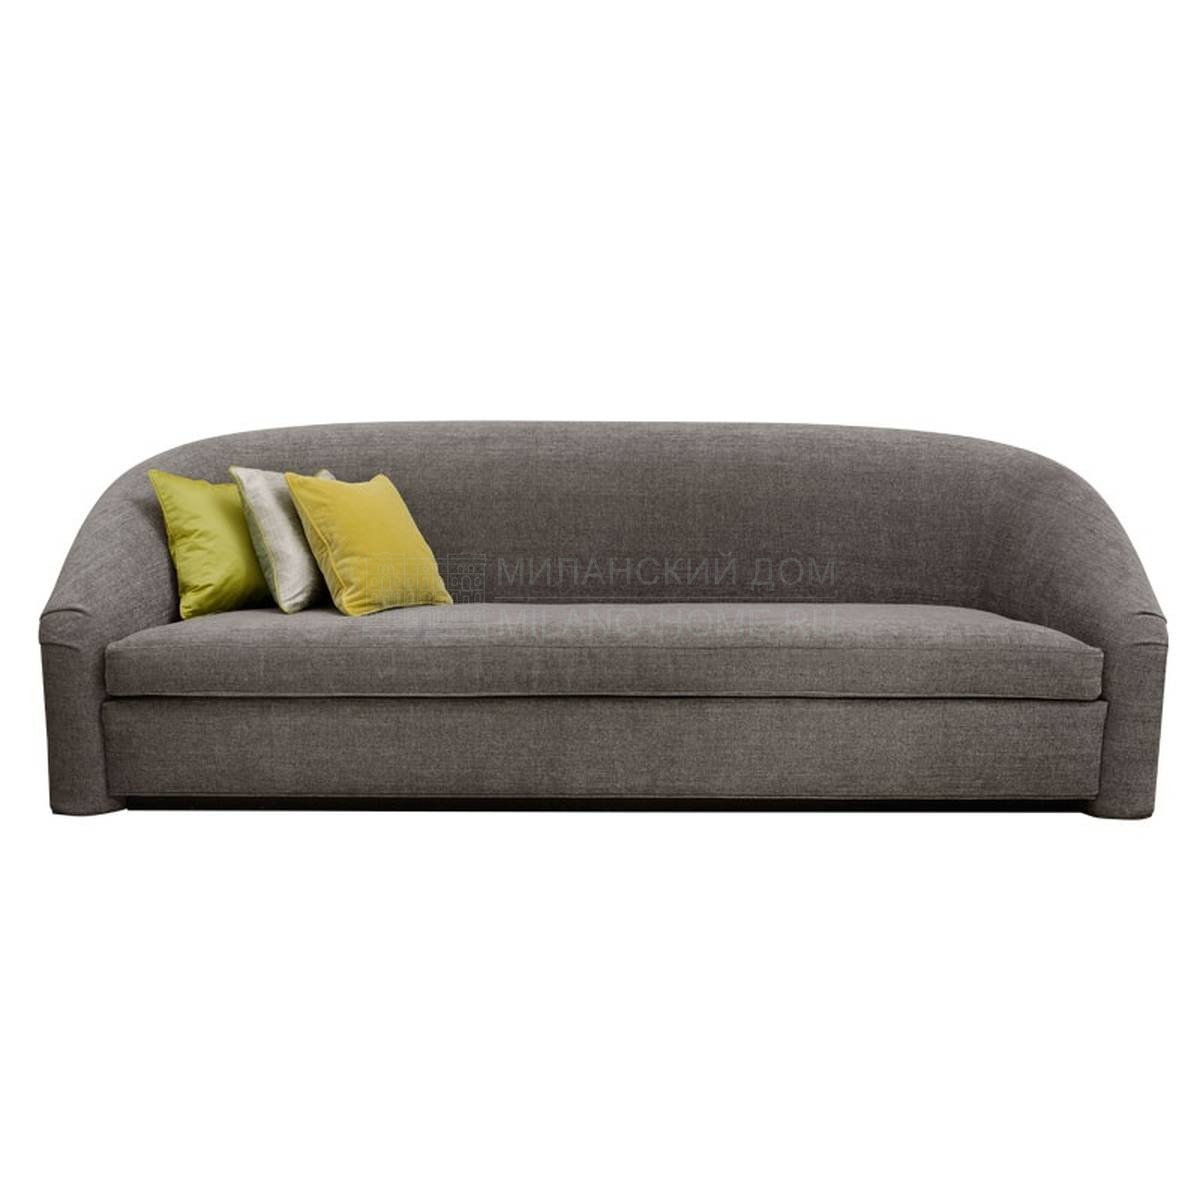 Прямой диван Monsieur / sofa из Италии фабрики SOFTHOUSE